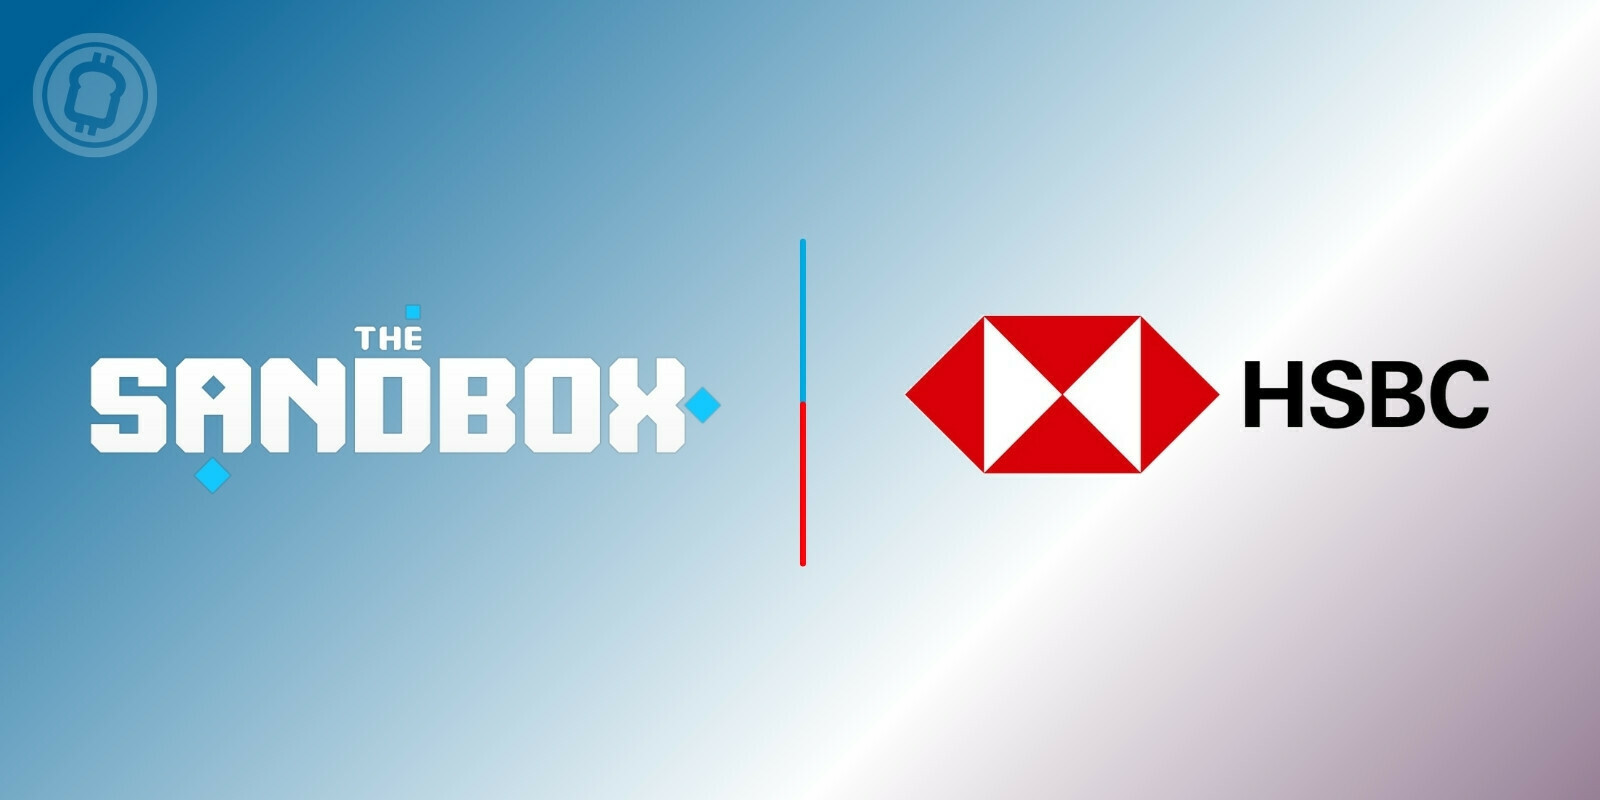 Le géant bancaire HSBC s'associe au metaverse The Sandbox